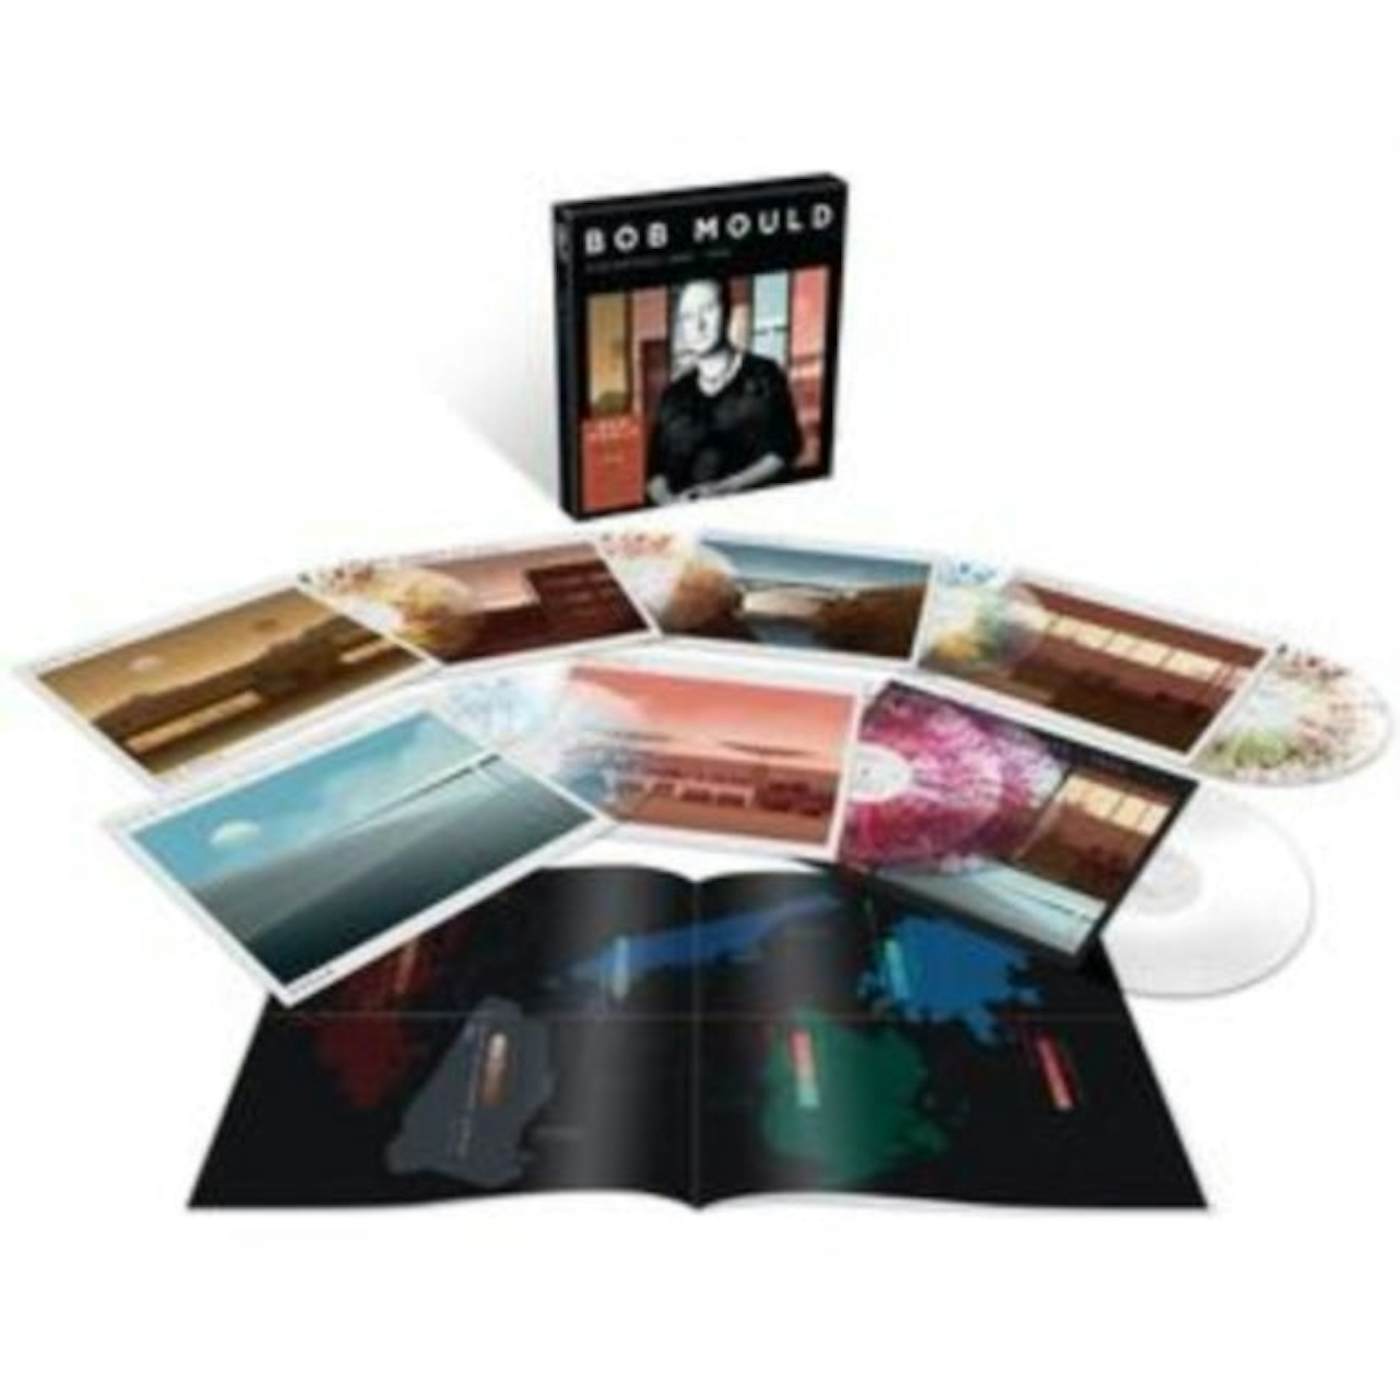 Bob Mould LP Vinyl Record Box Set - Distortion: 19 89-19 95